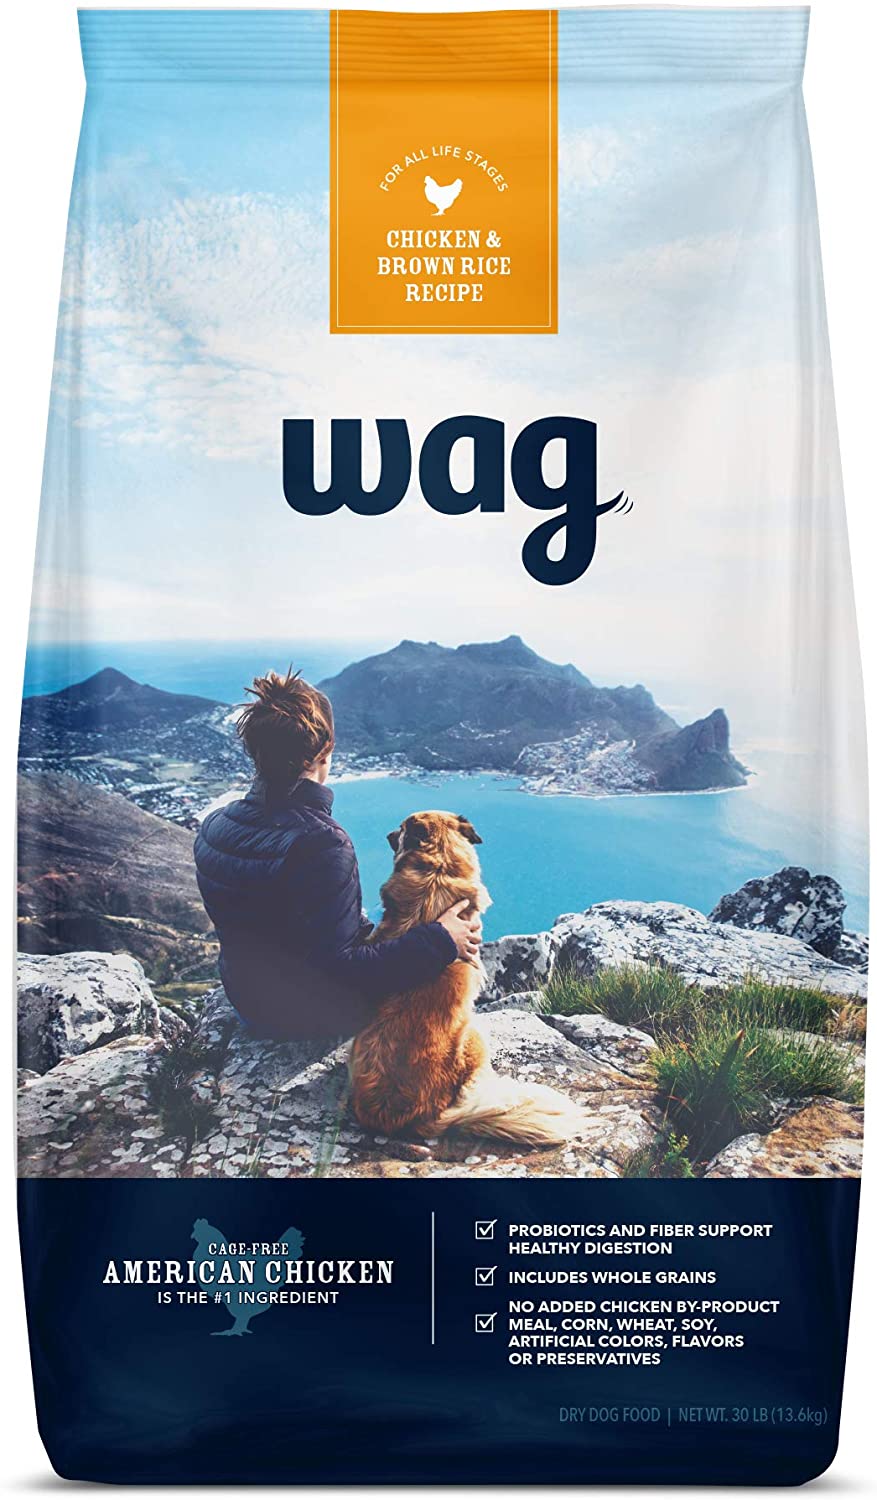 Wag Dog Food Amazon's Brand 30 LB Bag 40% Coupon + Subscribe & Save Discount $22.22